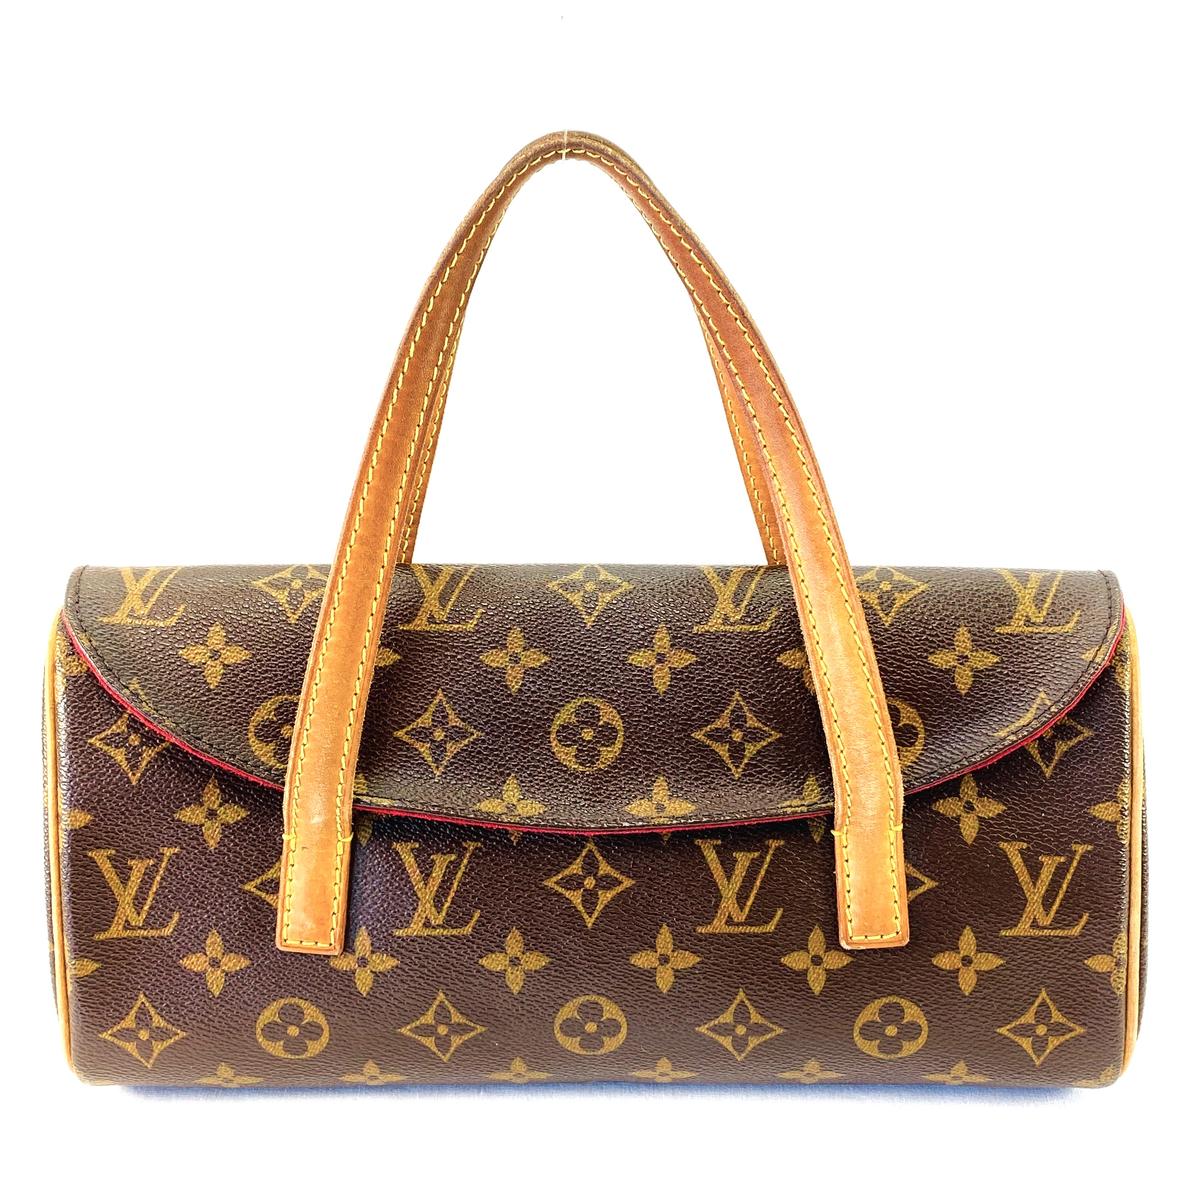 Authentic estate Louis Vuitton "Sonatine" canvas & leather handbag